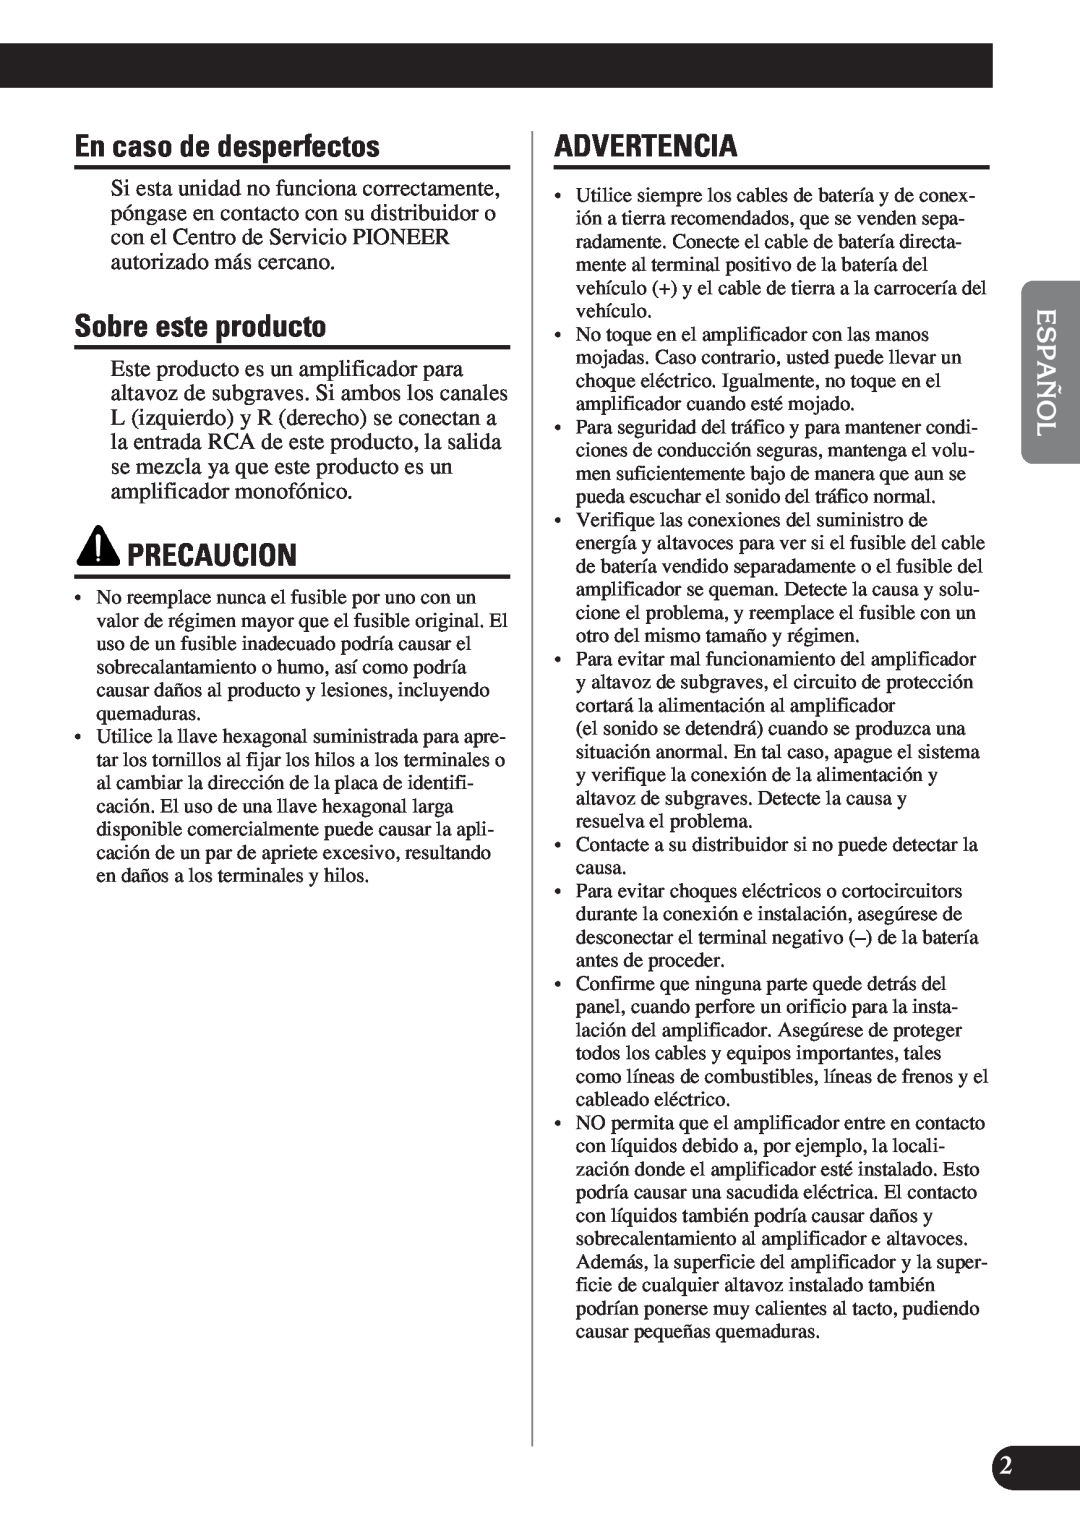 Pioneer D2000SPL owner manual En caso de desperfectos, Sobre este producto, Precaucion, Advertencia 